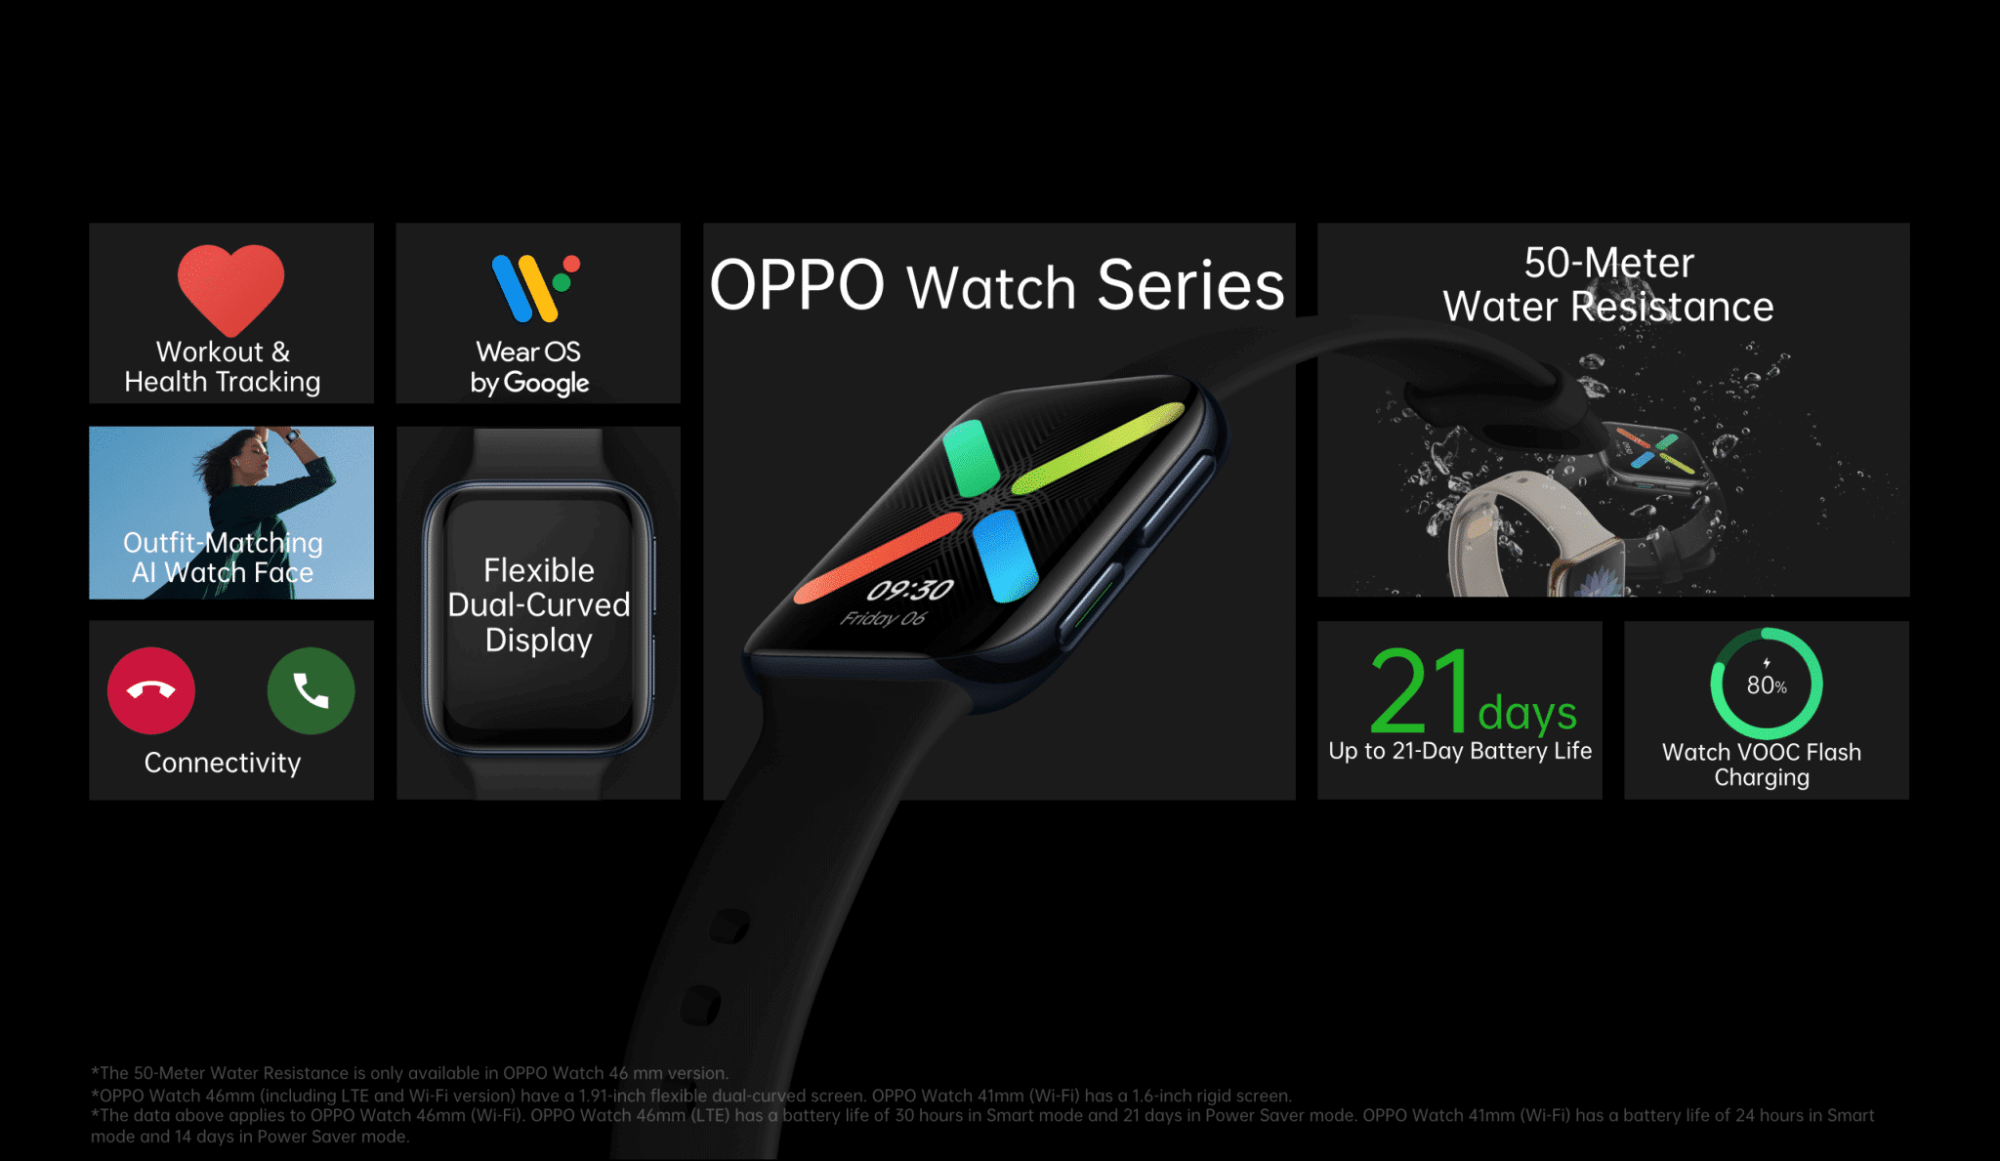 OPPO Watch Series ปลดล็อคทุกการเชื่อมต่อในสไตล์ที่เป็นคุณ ด้วยดีไซน์ที่โดดเด่น 3